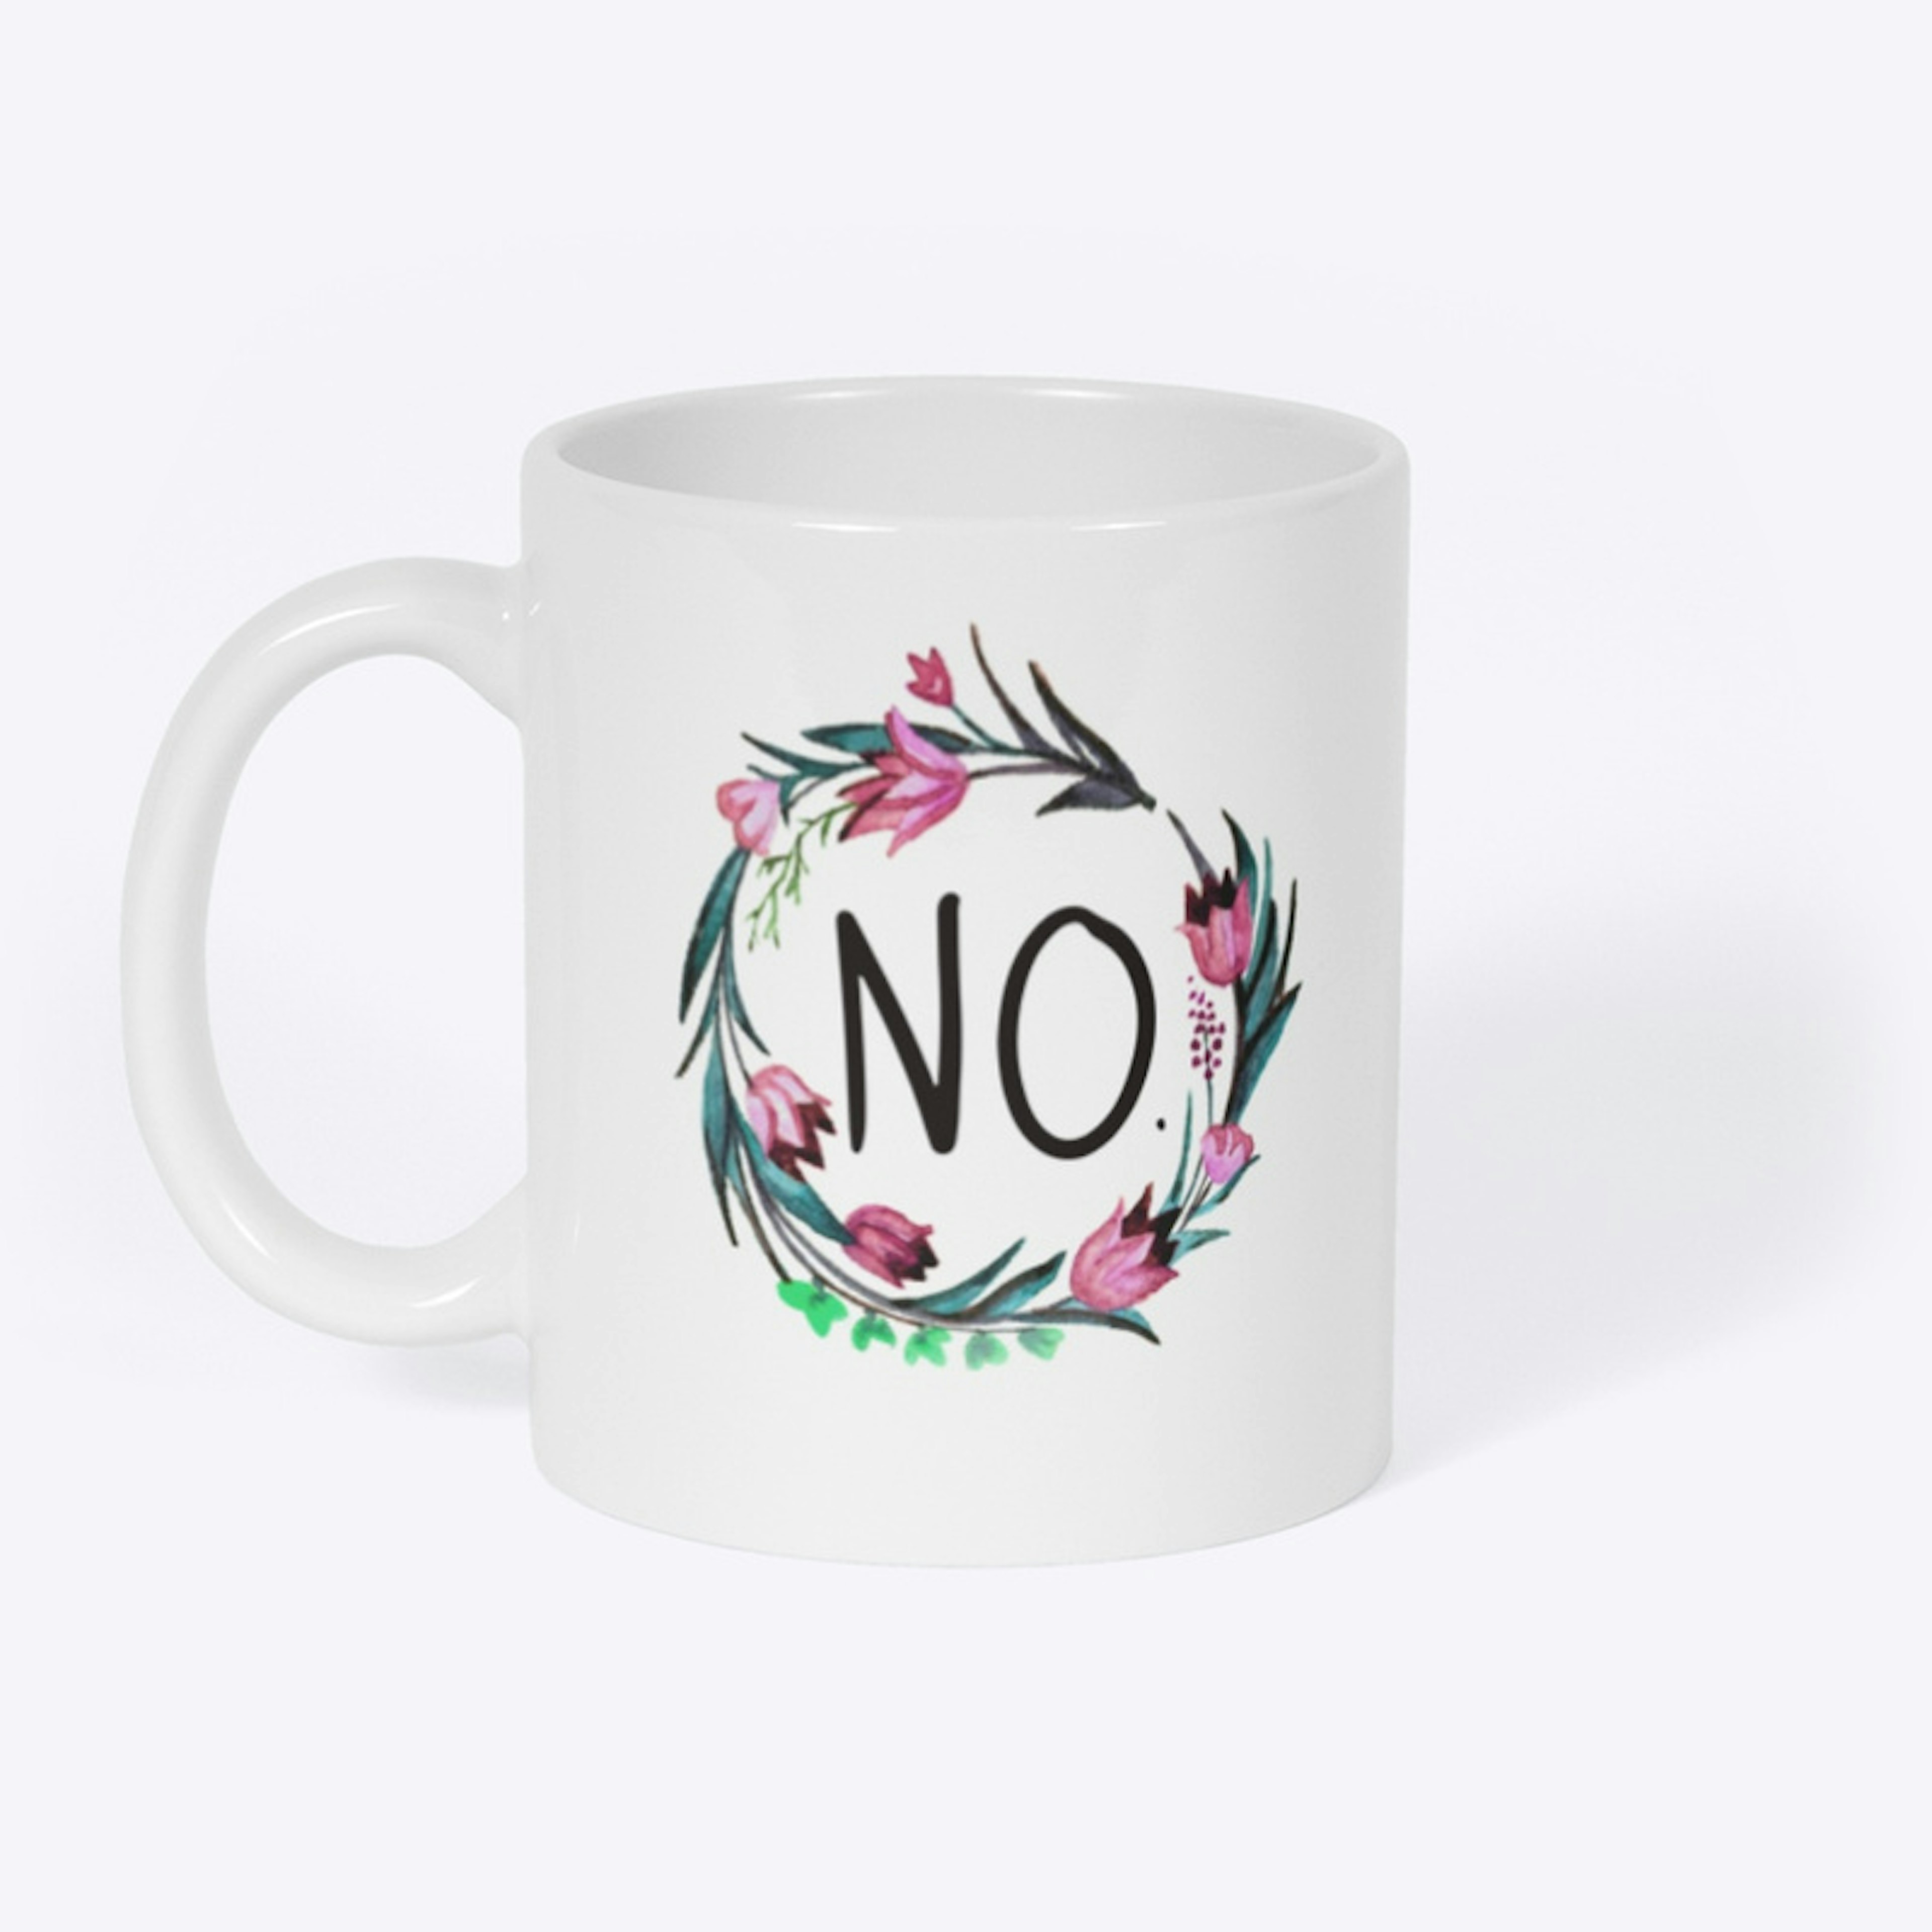 No Mug